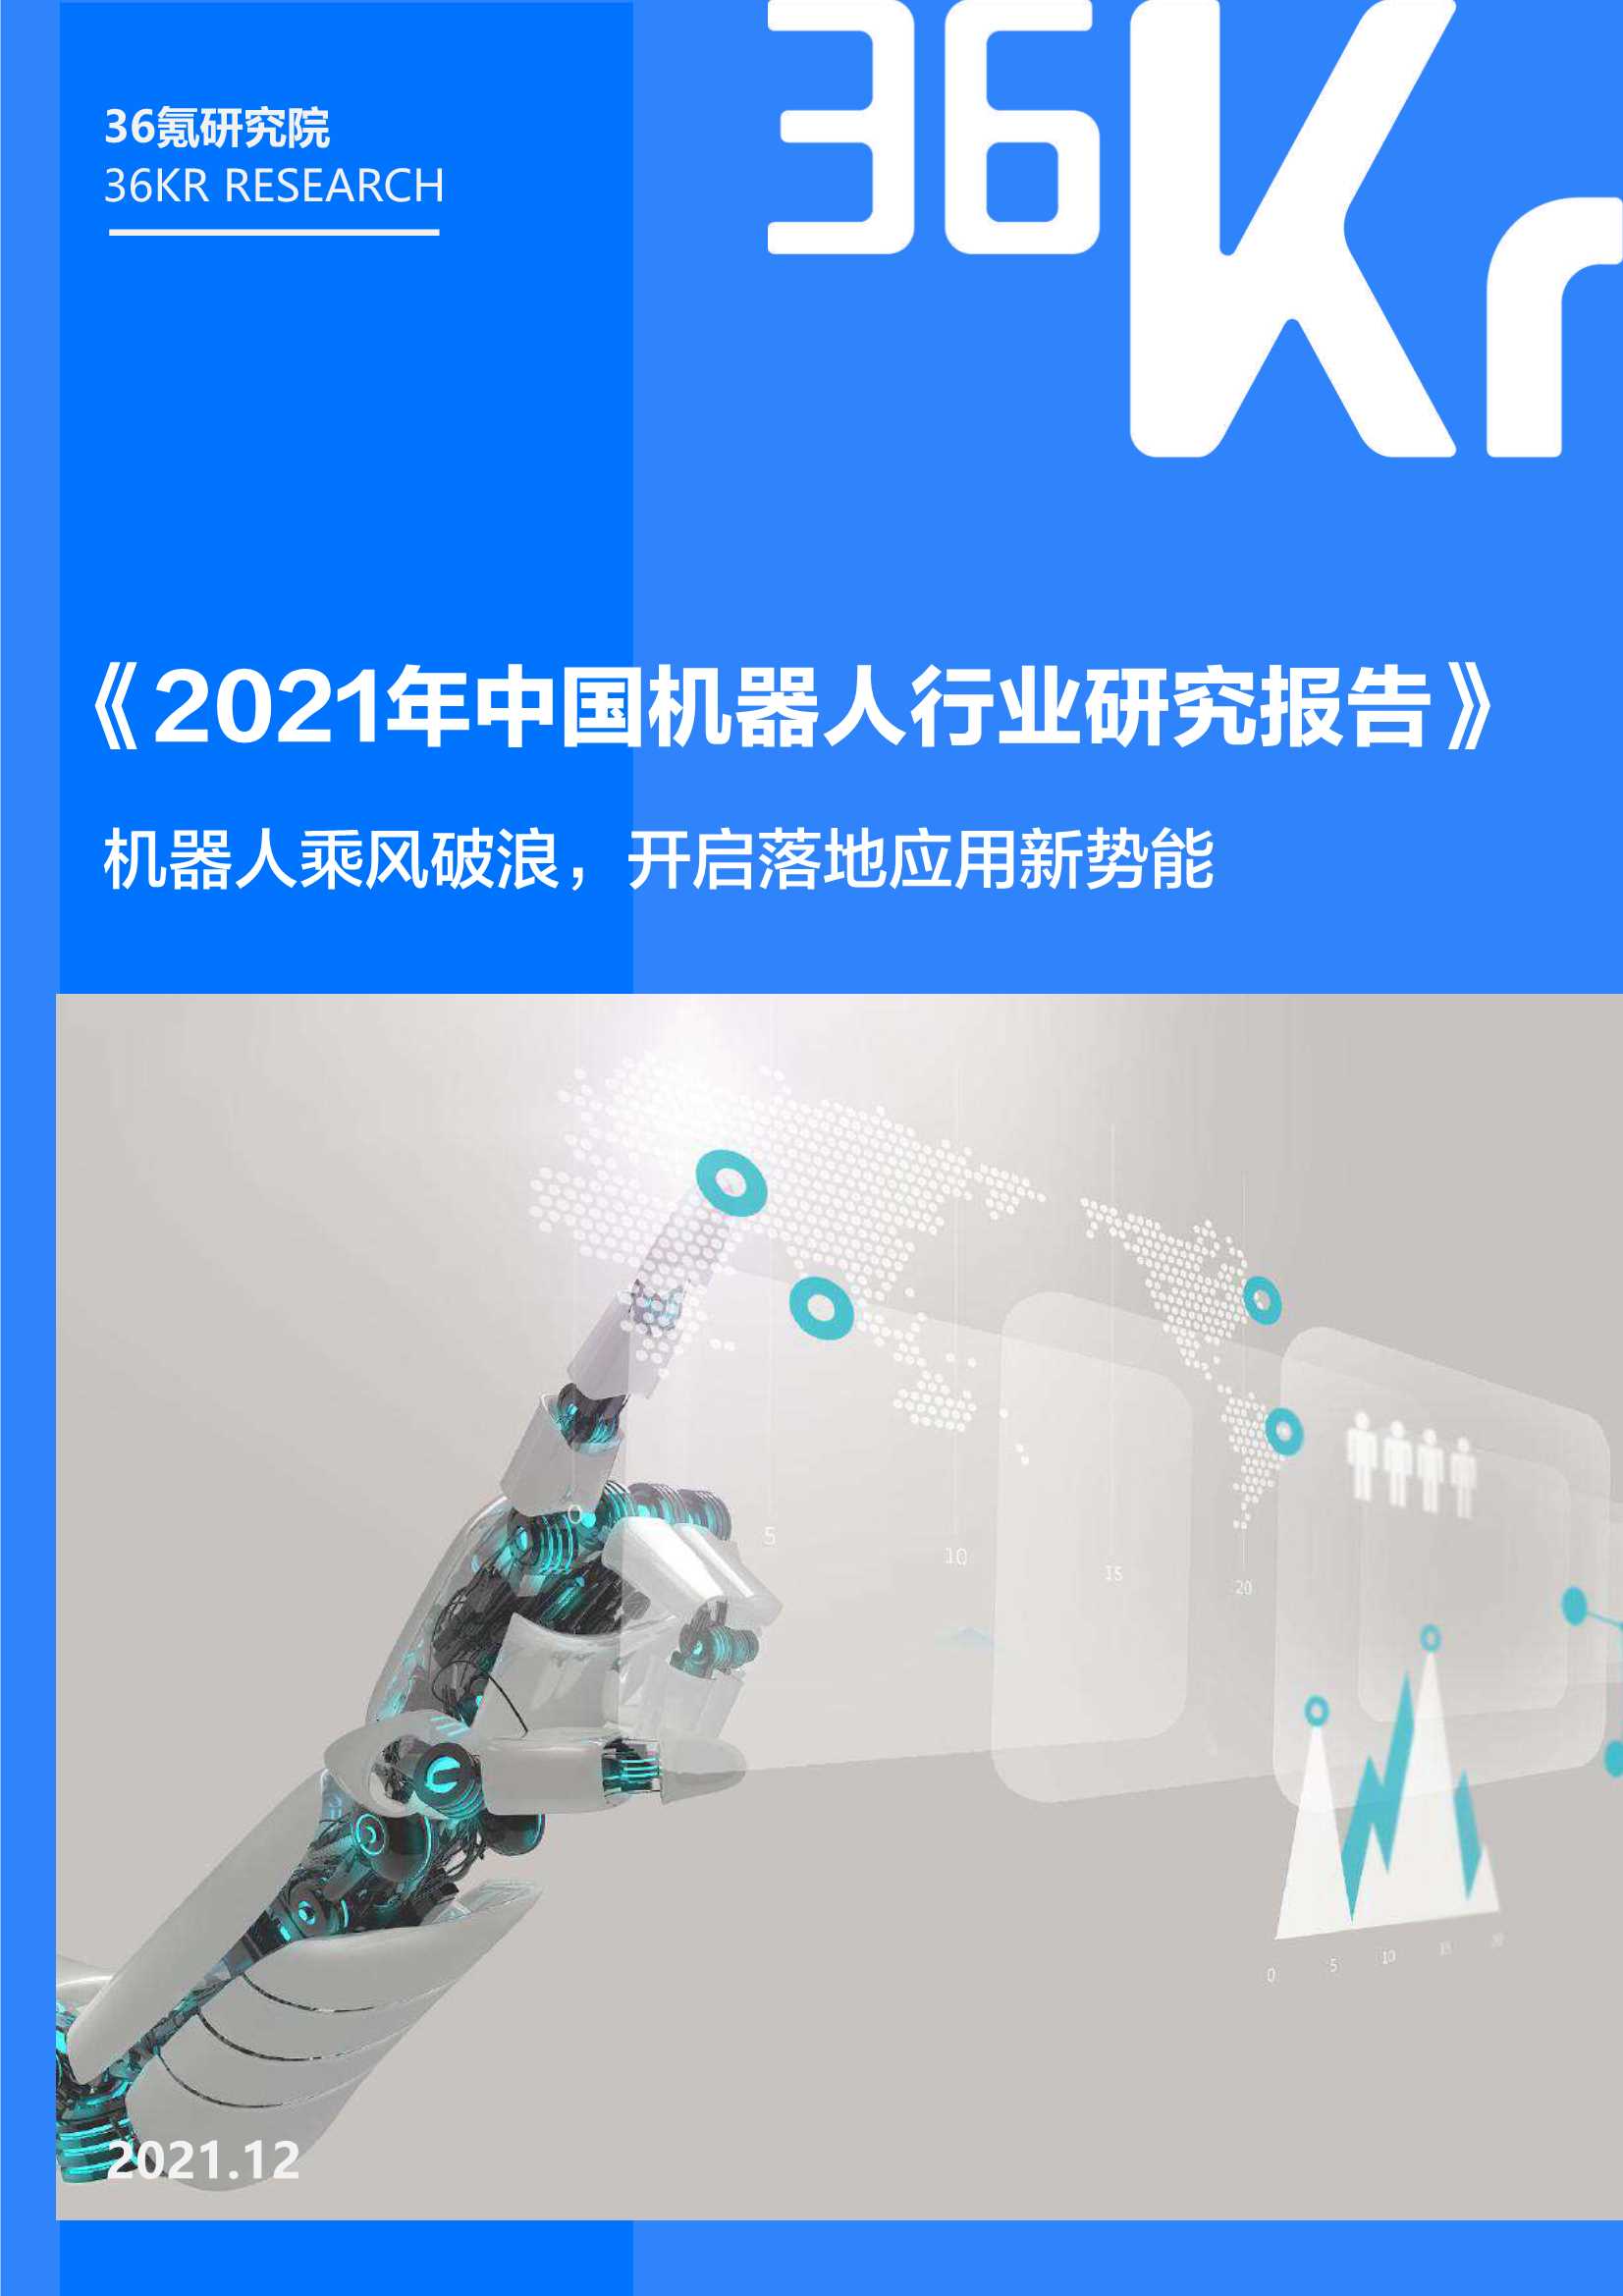 36Kr-2021年中国机器人行业研究报告-2022.01-41页